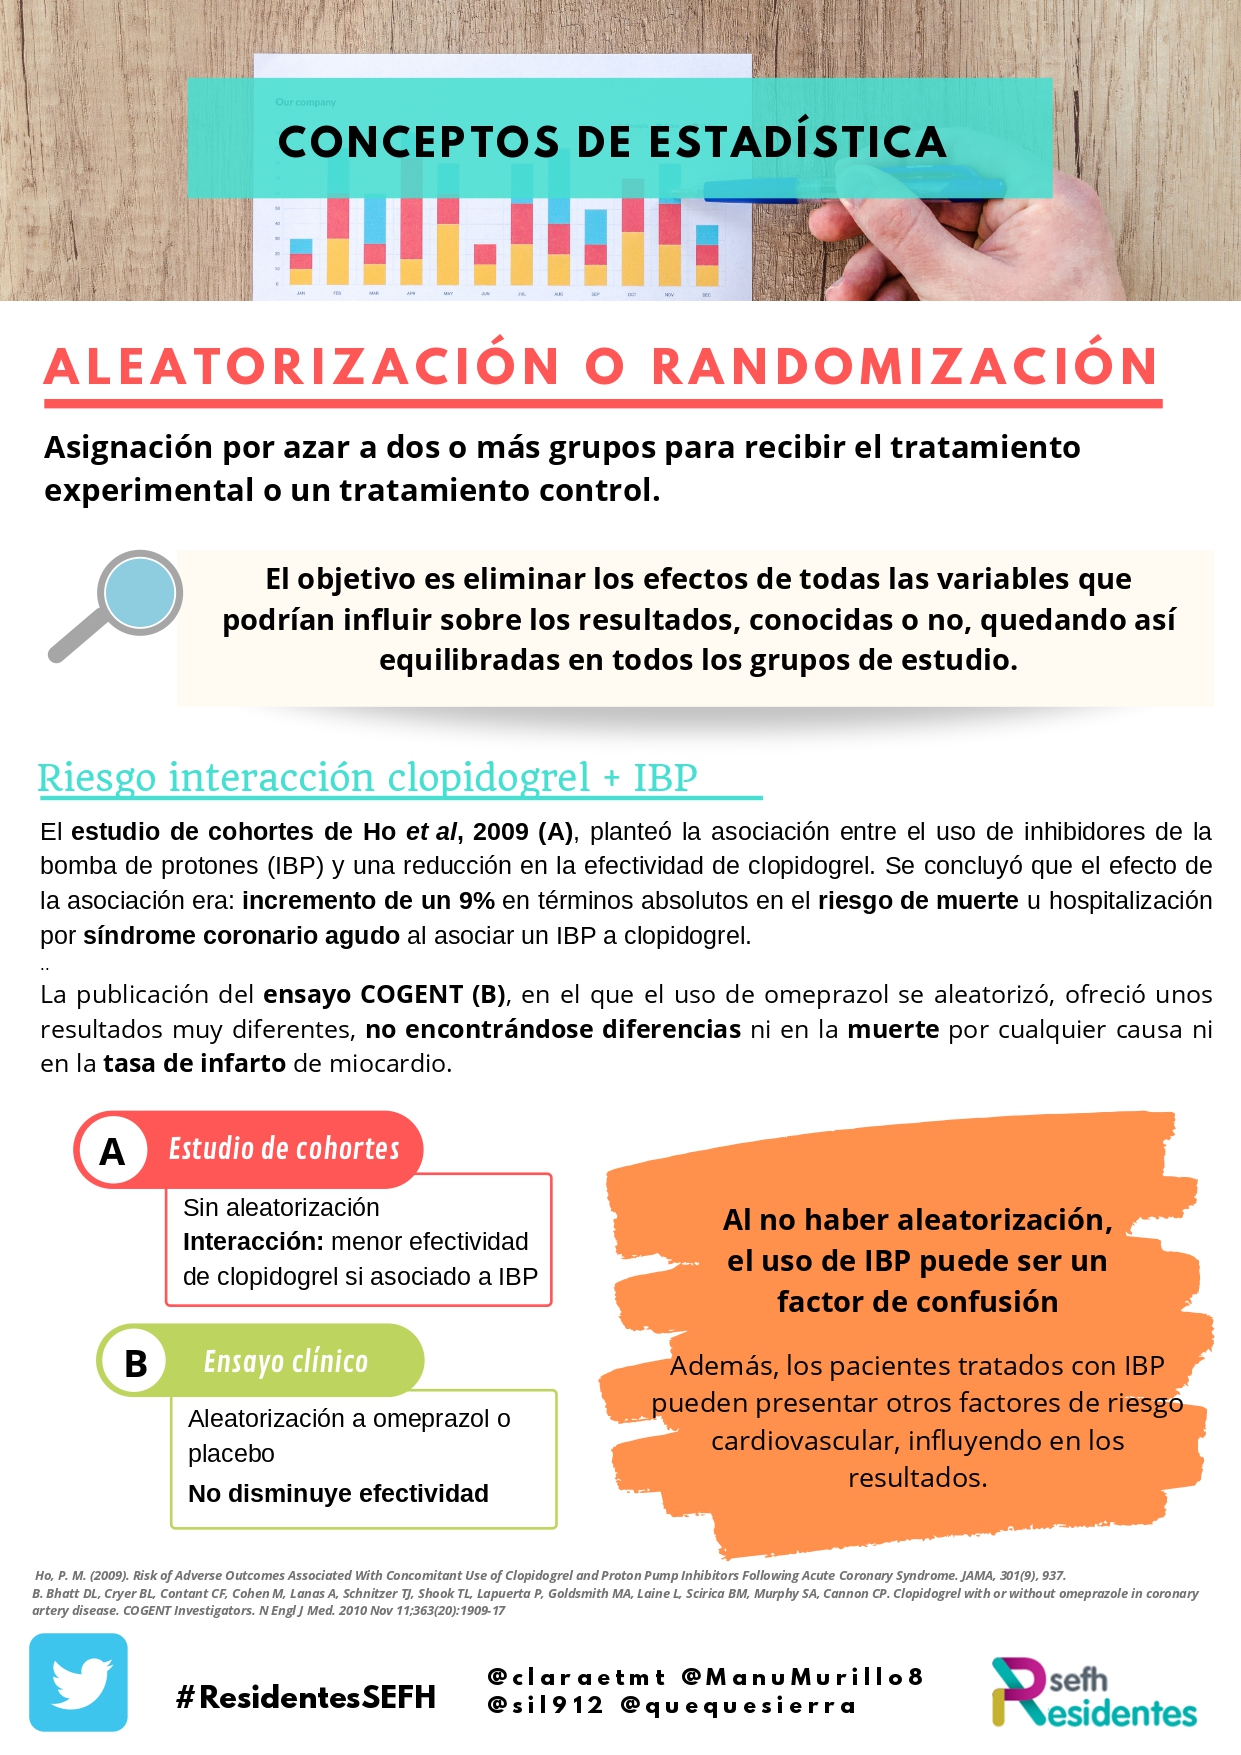 Estadística con residentesSEFH (II): aleatorización o randomización